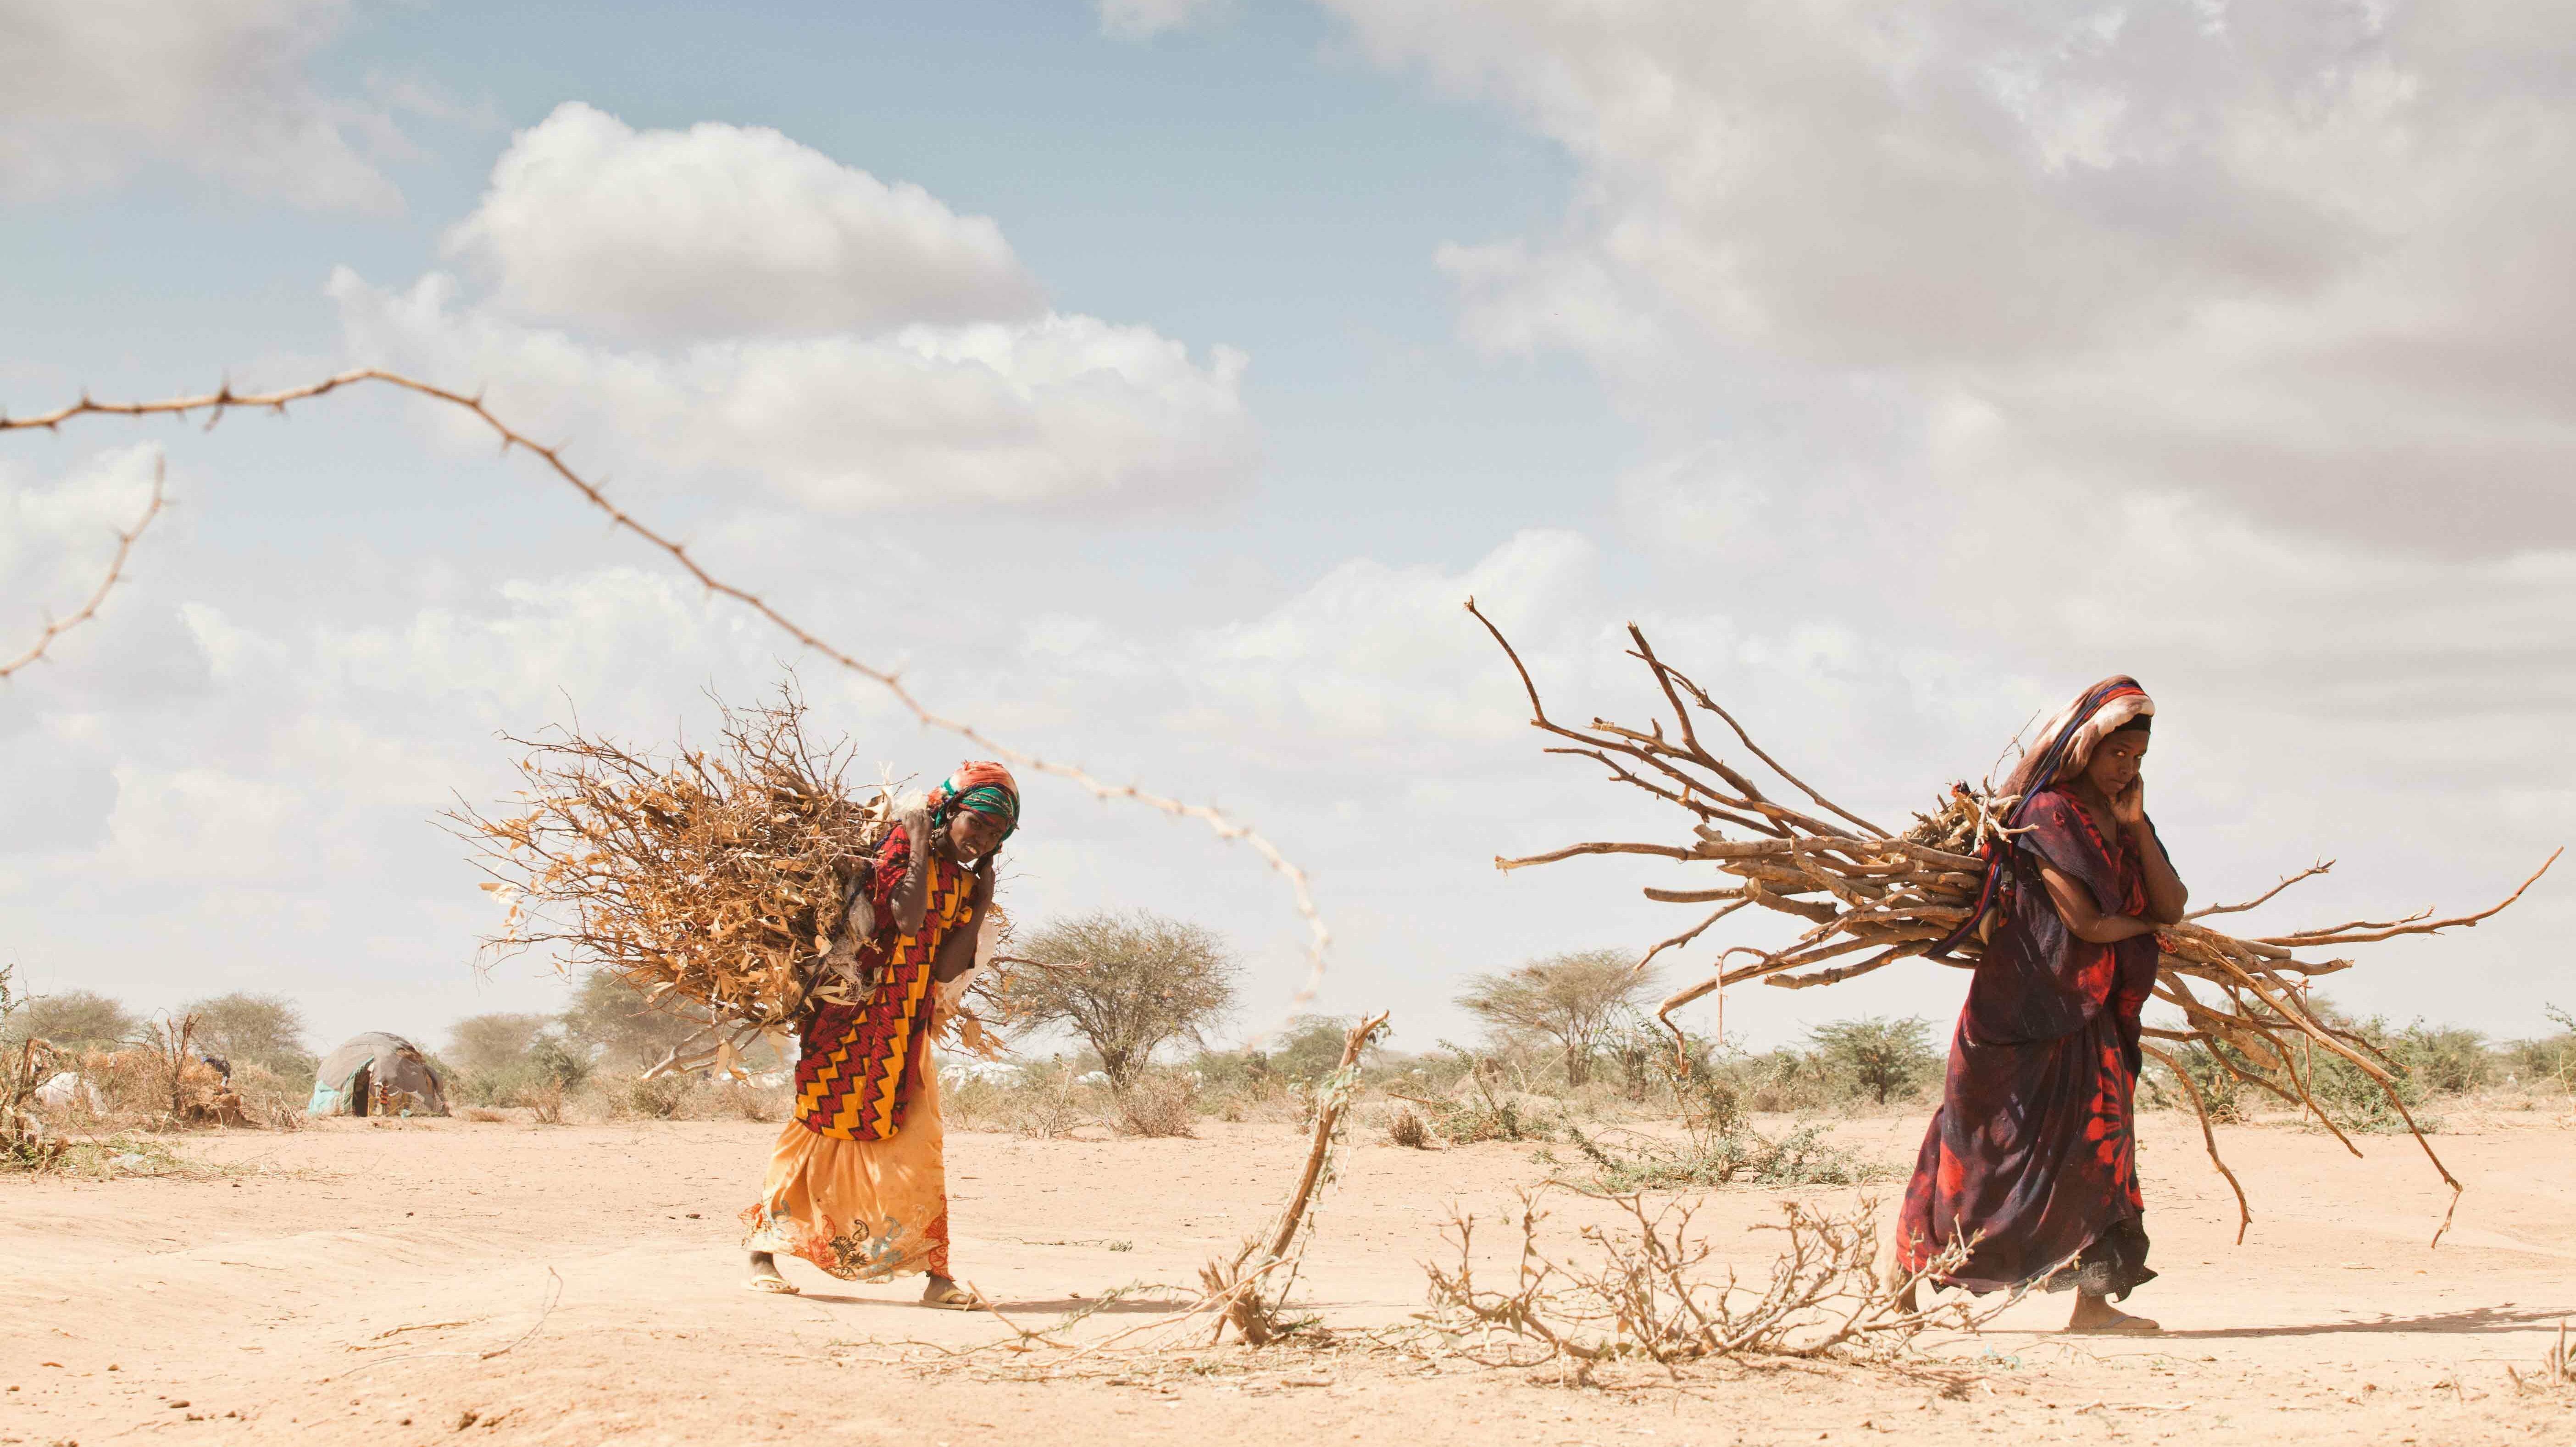 Frauen sammeln Holz in Savanne